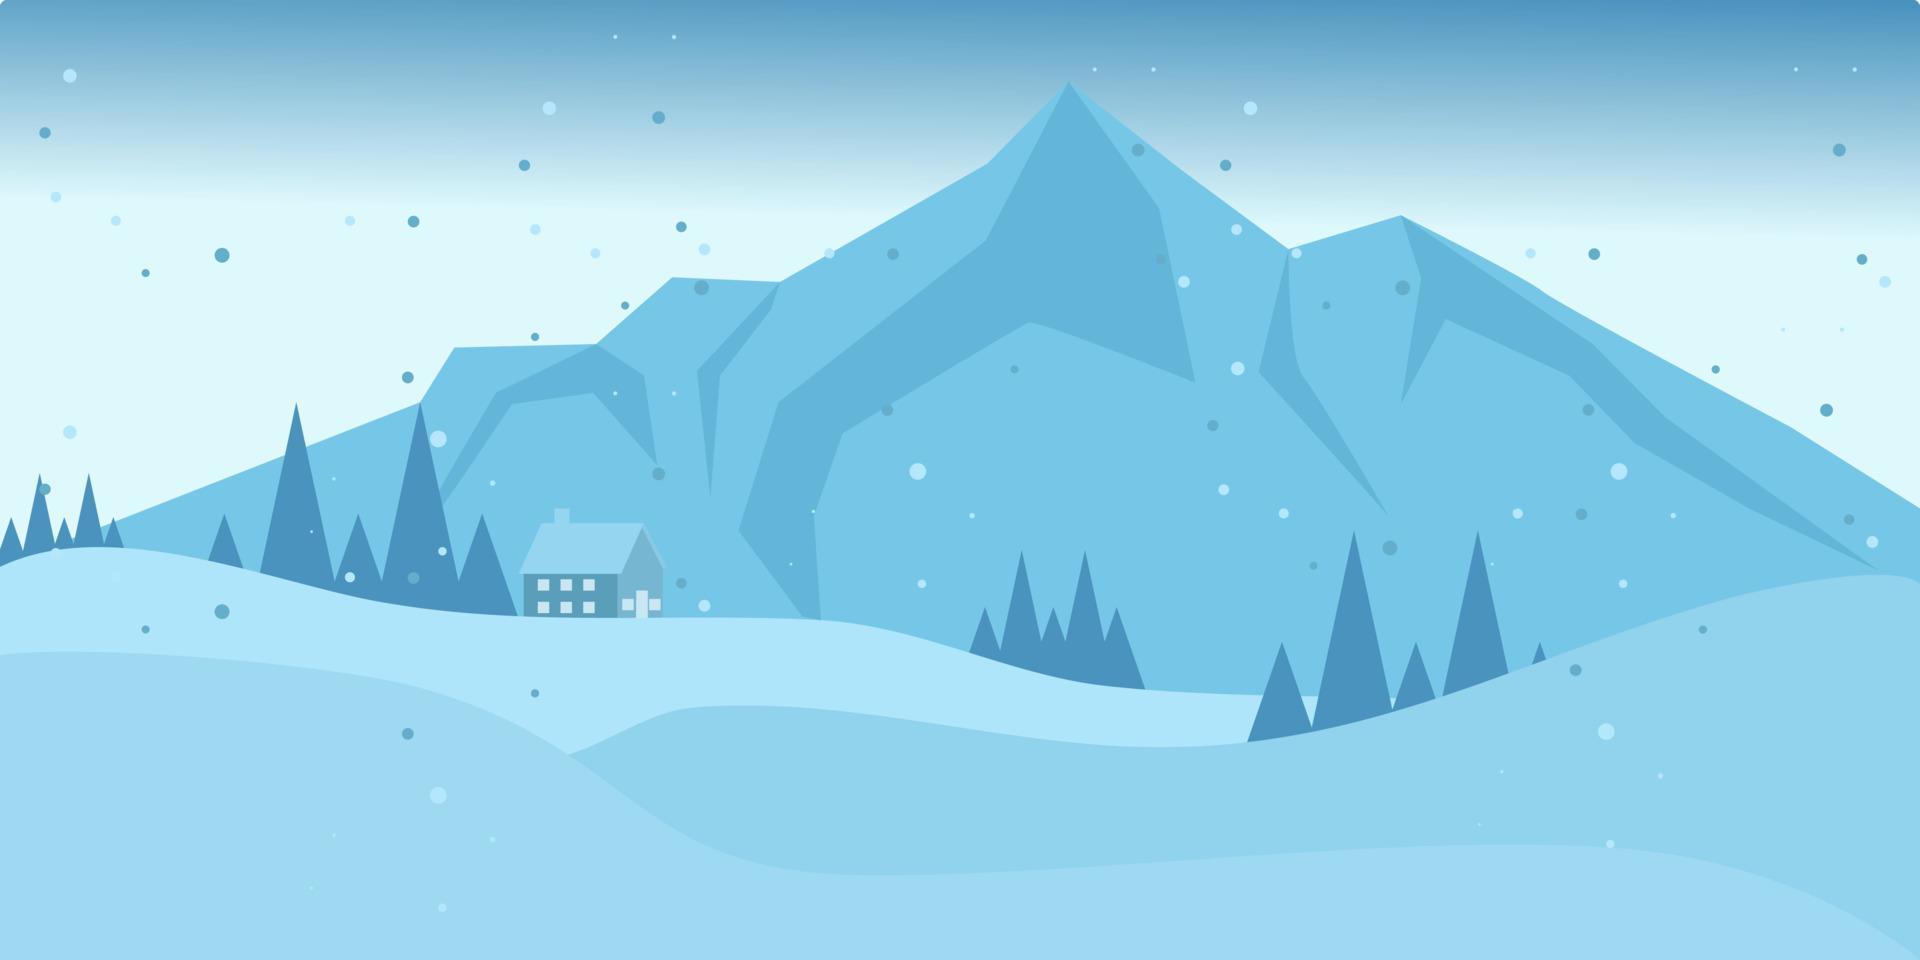 vista a la montaña de invierno con pinos y colinas. paisaje nevado de invierno. hermoso fondo de paisaje plano de invierno. paisaje invernal con montañas y nevadas. diseño plano. vector